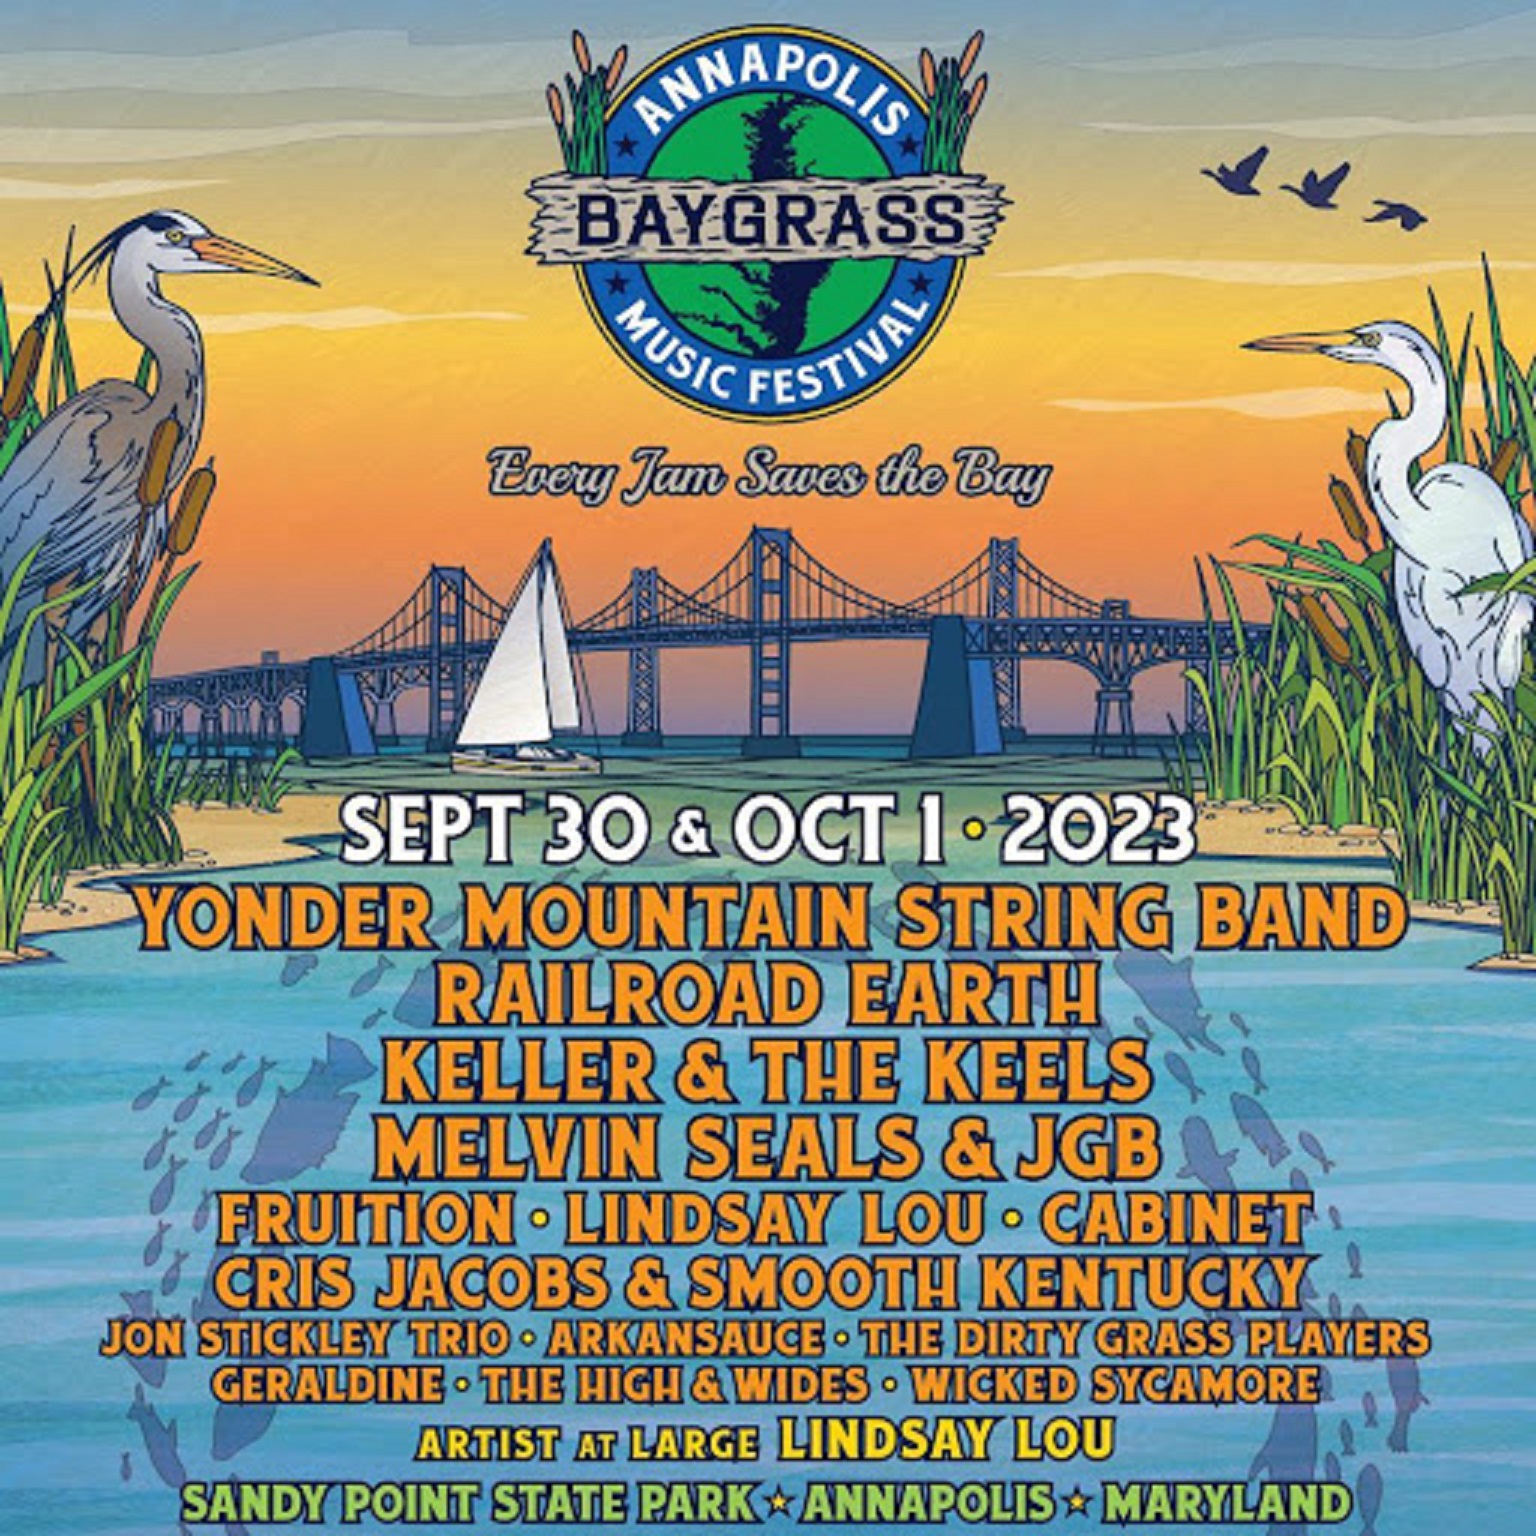 Annapolis Baygrass Music Festival Announces Full 2023 Lineup